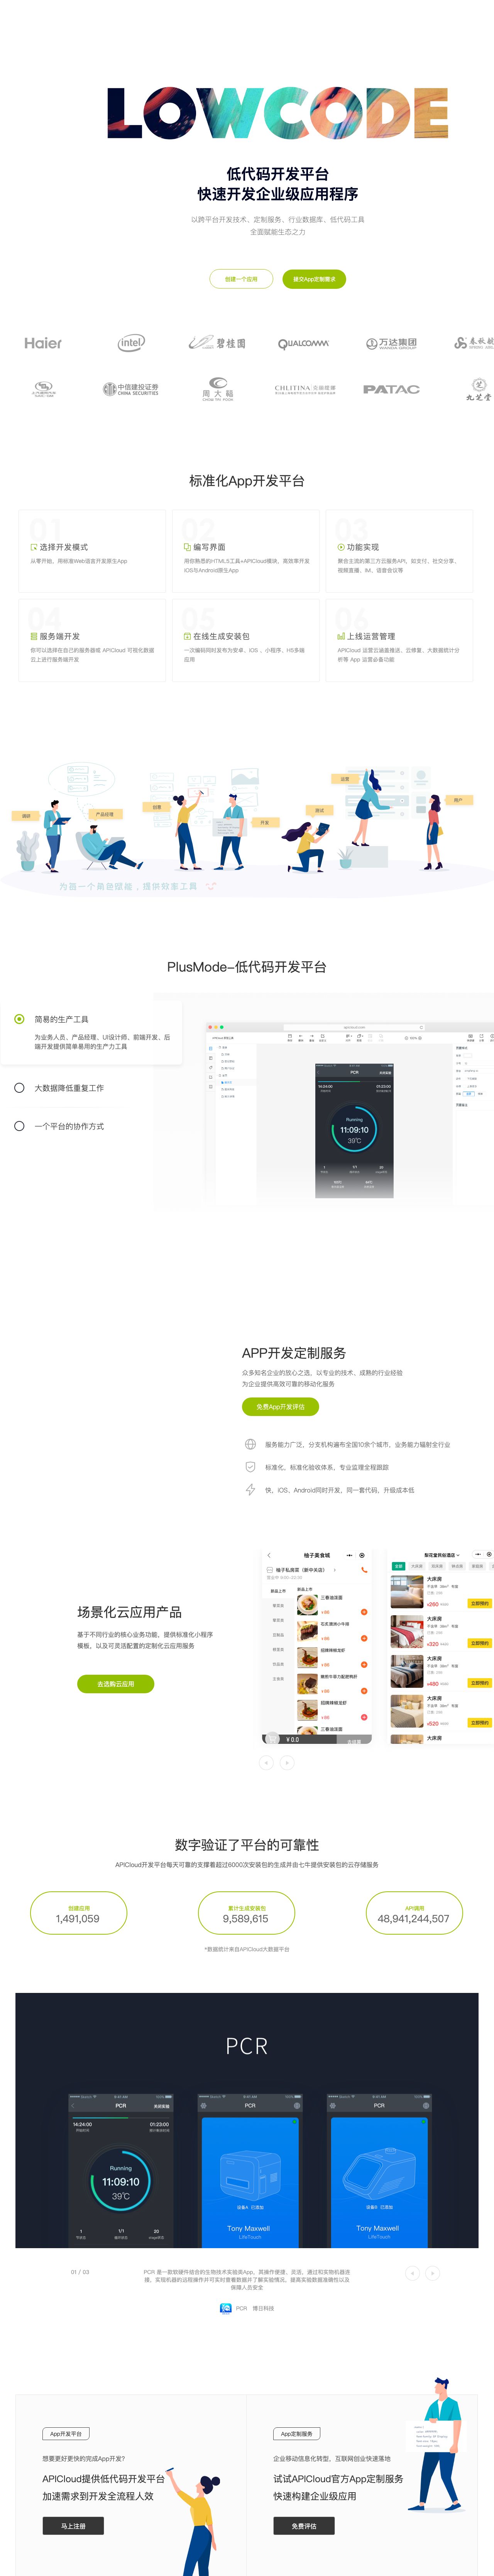 APICloud 手机APP开发、APP制作技术专家 - 中国领先低代码开发平台-解决方案介绍